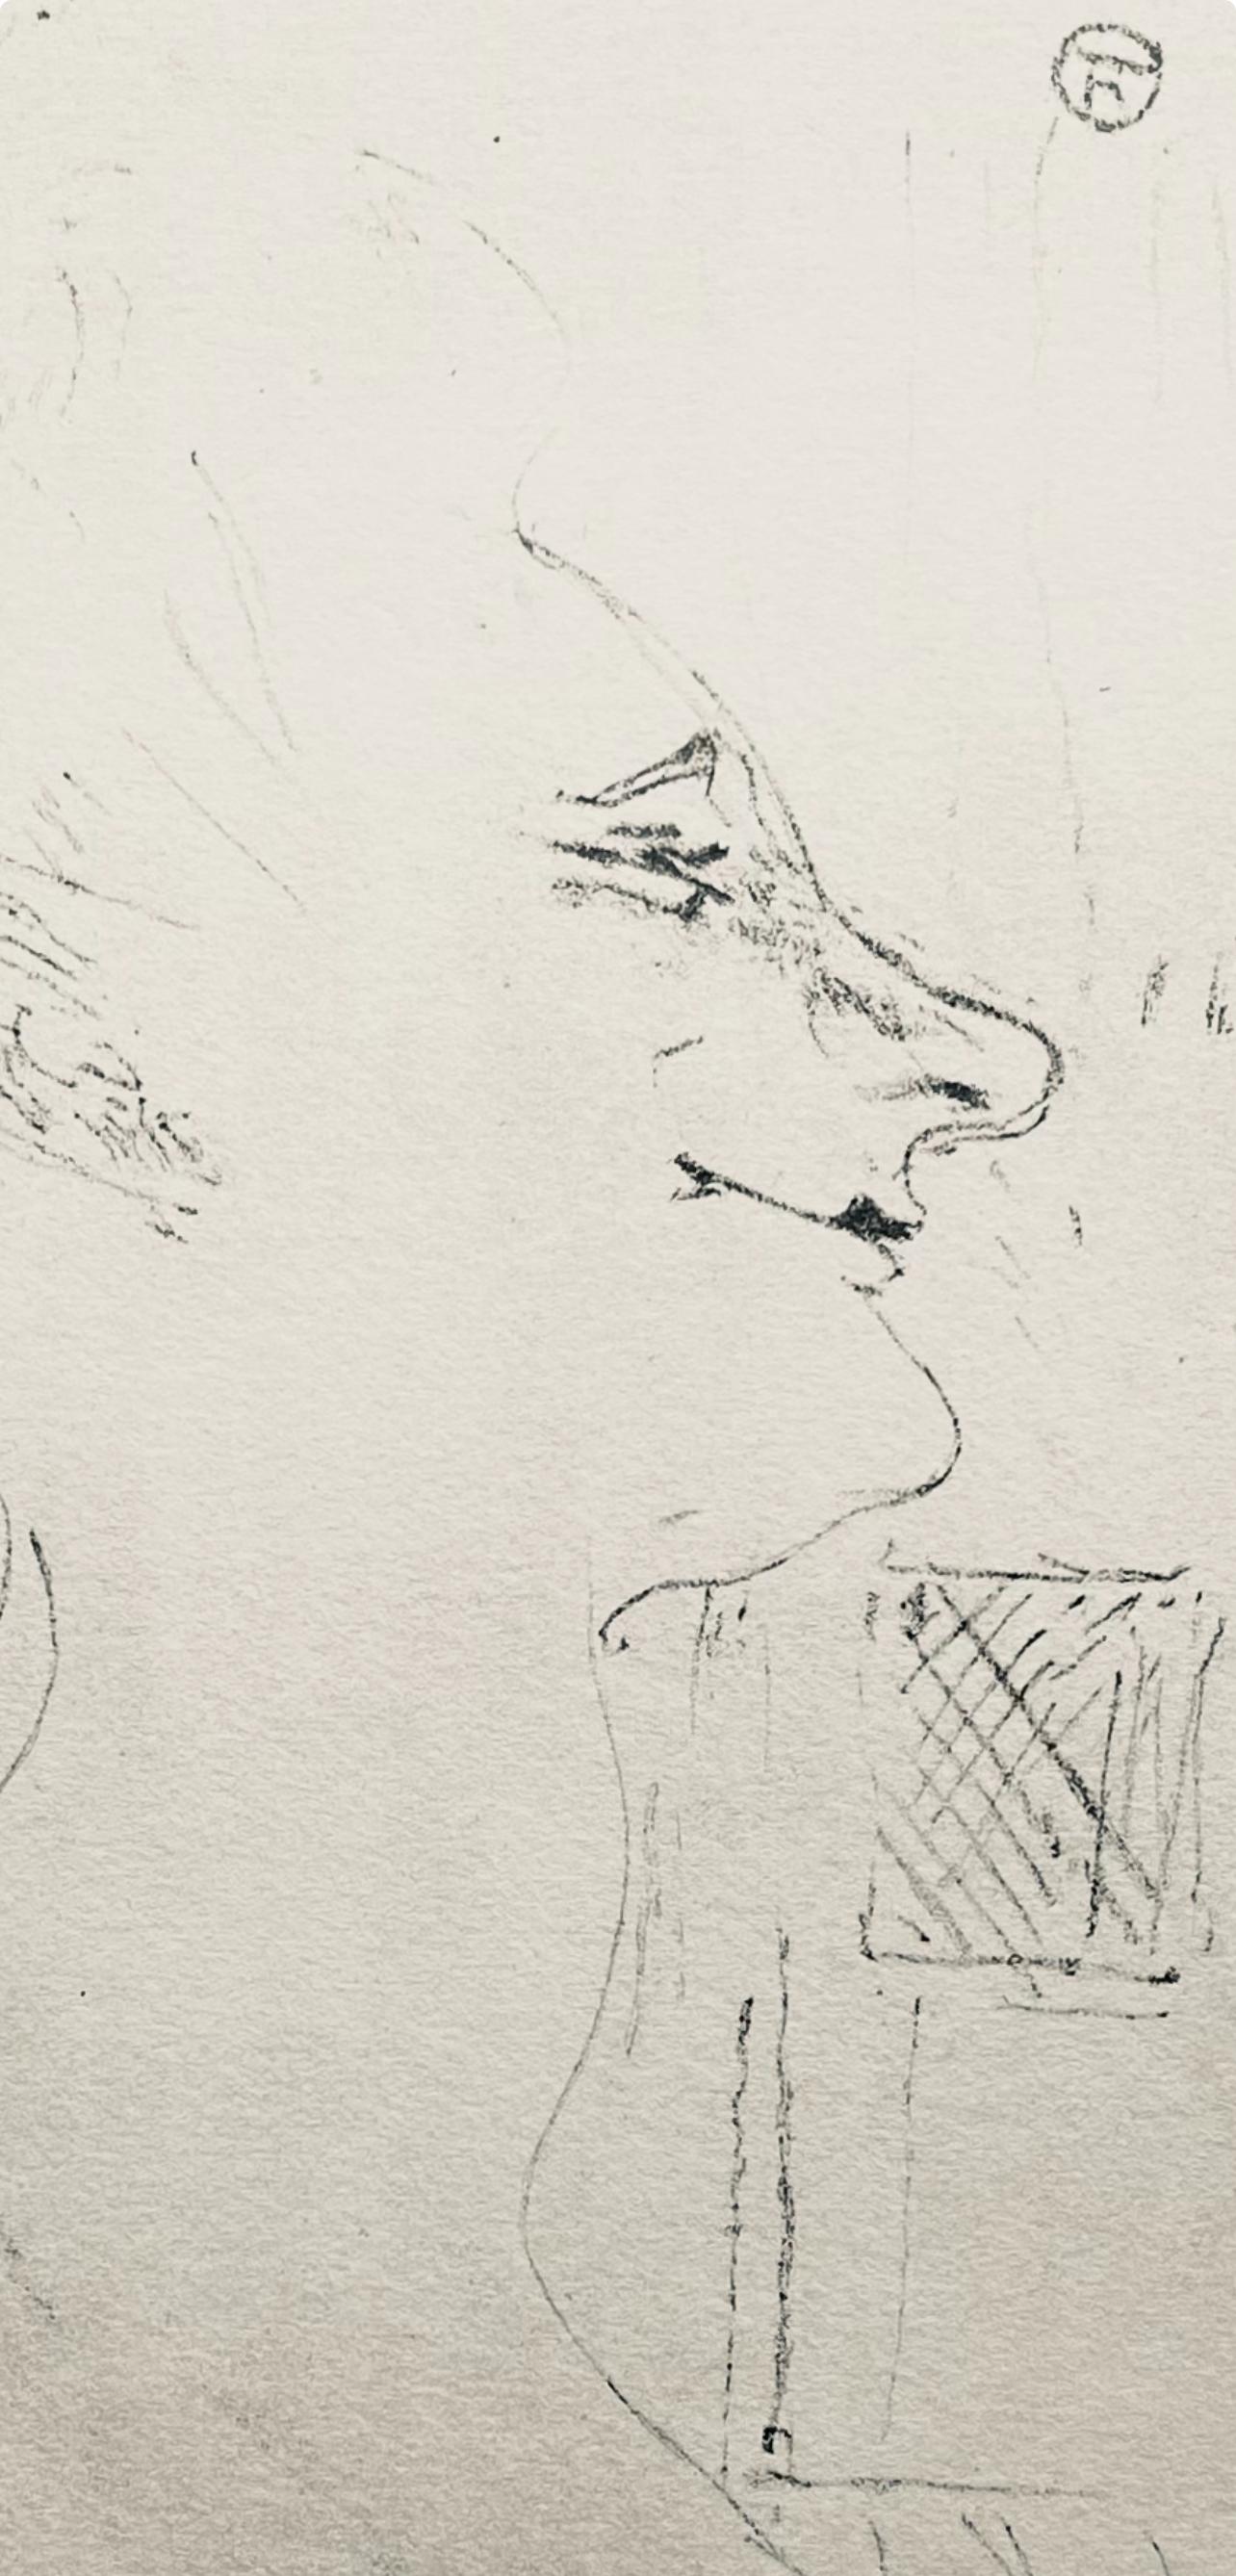 Toulouse-Lautrec, Composizione, Yvette Guilbert vue par Toulouse-Lautrec (dopo) - Print Postimpressionismo di Henri de Toulouse-Lautrec